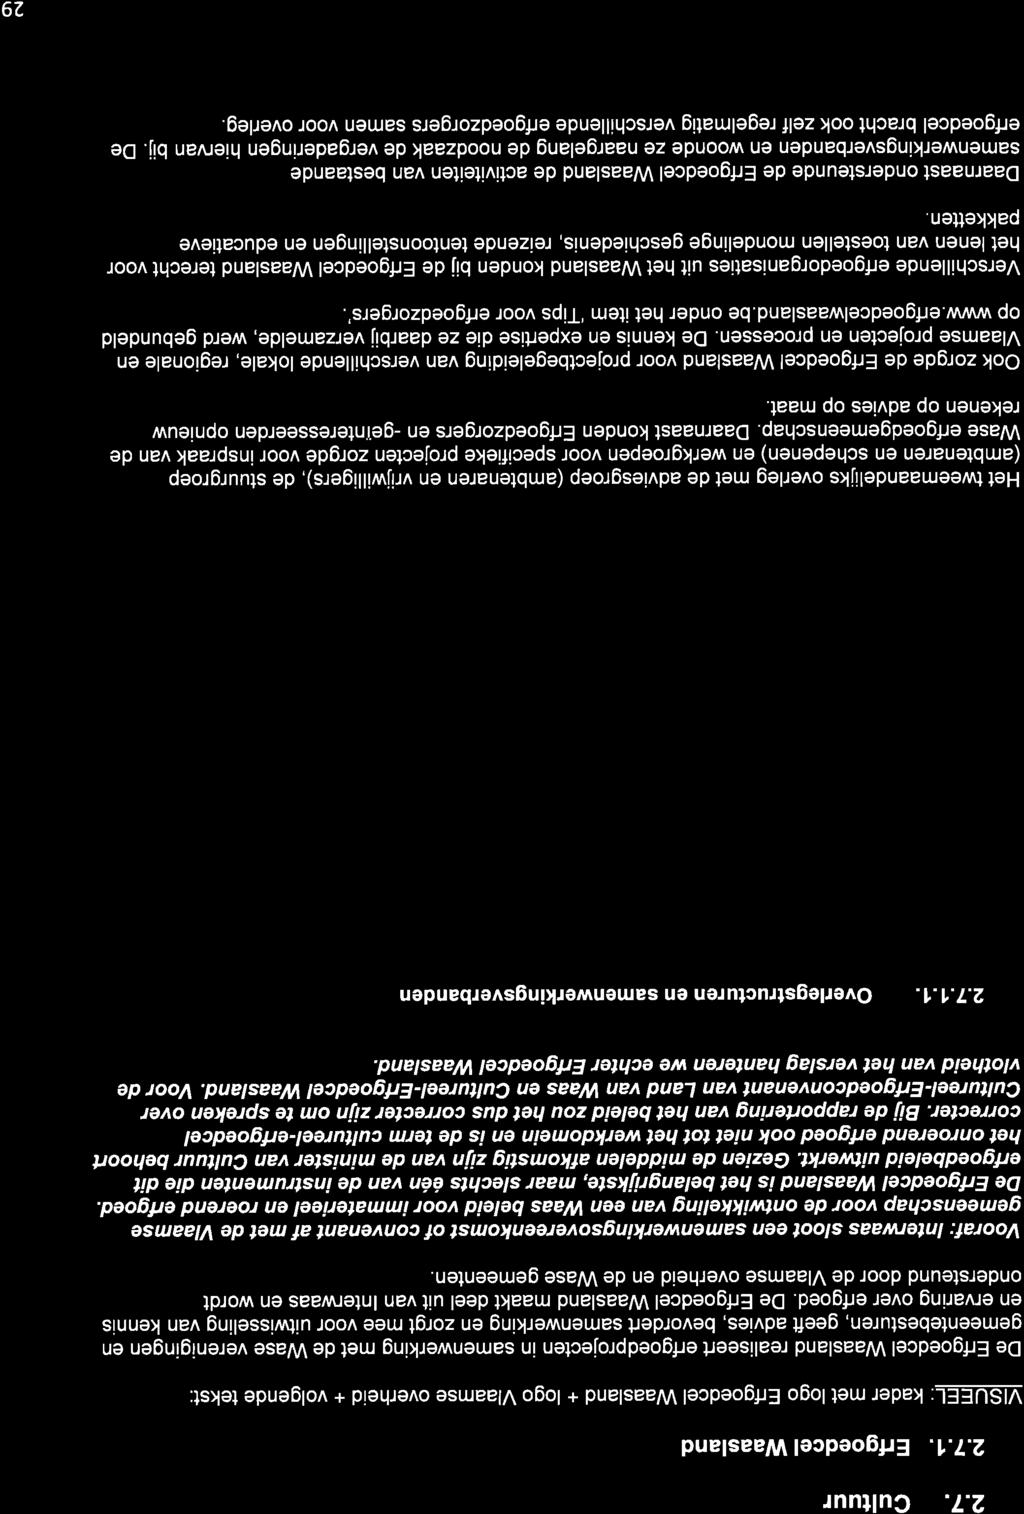 2.7. Gultuur 2.7.1, Erfgoedcel Waasland VISUEEL: kader met logo ErfgoedcelWaasland + logo Vlaamse overheid + volgende tekst: De Erfgoedcel Waasland realiseert erfgoedprojecten in samenwerking met de